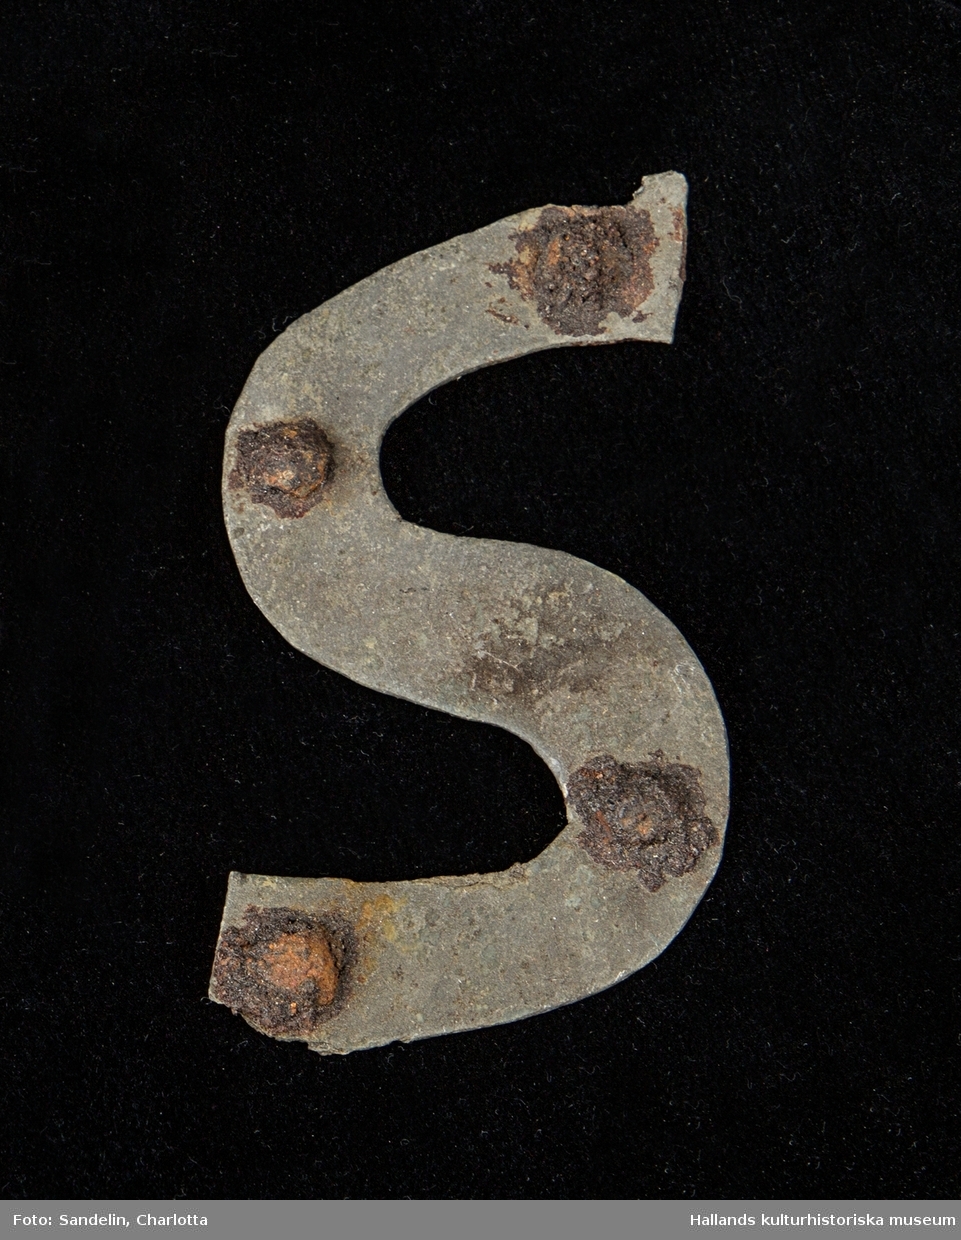 Stora mängder fynd av keramik, tegel, puts (delvis bemålad), glas samt metaller som järn, cu-leg och bly, tillvaratogs vid undersökningarna av kyrkan. Även drygt 1000 mynt påträffades.

De människoben som bör ha tillvaratagits vid undersökningen saknas i museets samlingar. Detta är underligt då benen från Ny Varbergs kyrka som undersöktes 1936, i stort sett är i behåll.

De flesta av fynden är införda med separata fyndnummer i VMF-katalogen, de finns i följd 15 426 - 17 720 (diverse), 20 151 - 21 215 (mynt) och 21 216-21 444 samt 21 469 - 21 592 (metaller) (Metaller från Ny Varberg kyrka är införda på mellanvarande nummer) . Enstaka fynd finns på >40 000 och kanske även på andra nummer.

En del omärkta fynd vilka sannolikt tidigare varit utställda kan säkert härledas mot fyndförteckningarna och med hjälp av foton mm.

Materialet omfattar 29 fyndbackar: varav 14 backar keramik, puts, tegel och glas, och 15 backar metallfynd. Därtill kommer mycket stora mängder tegel, en del murbruk och gravstensfragment, inalles 43 lådor.

Mynten är prydligt uppordnade i en liten låda vilken förvaras separat.